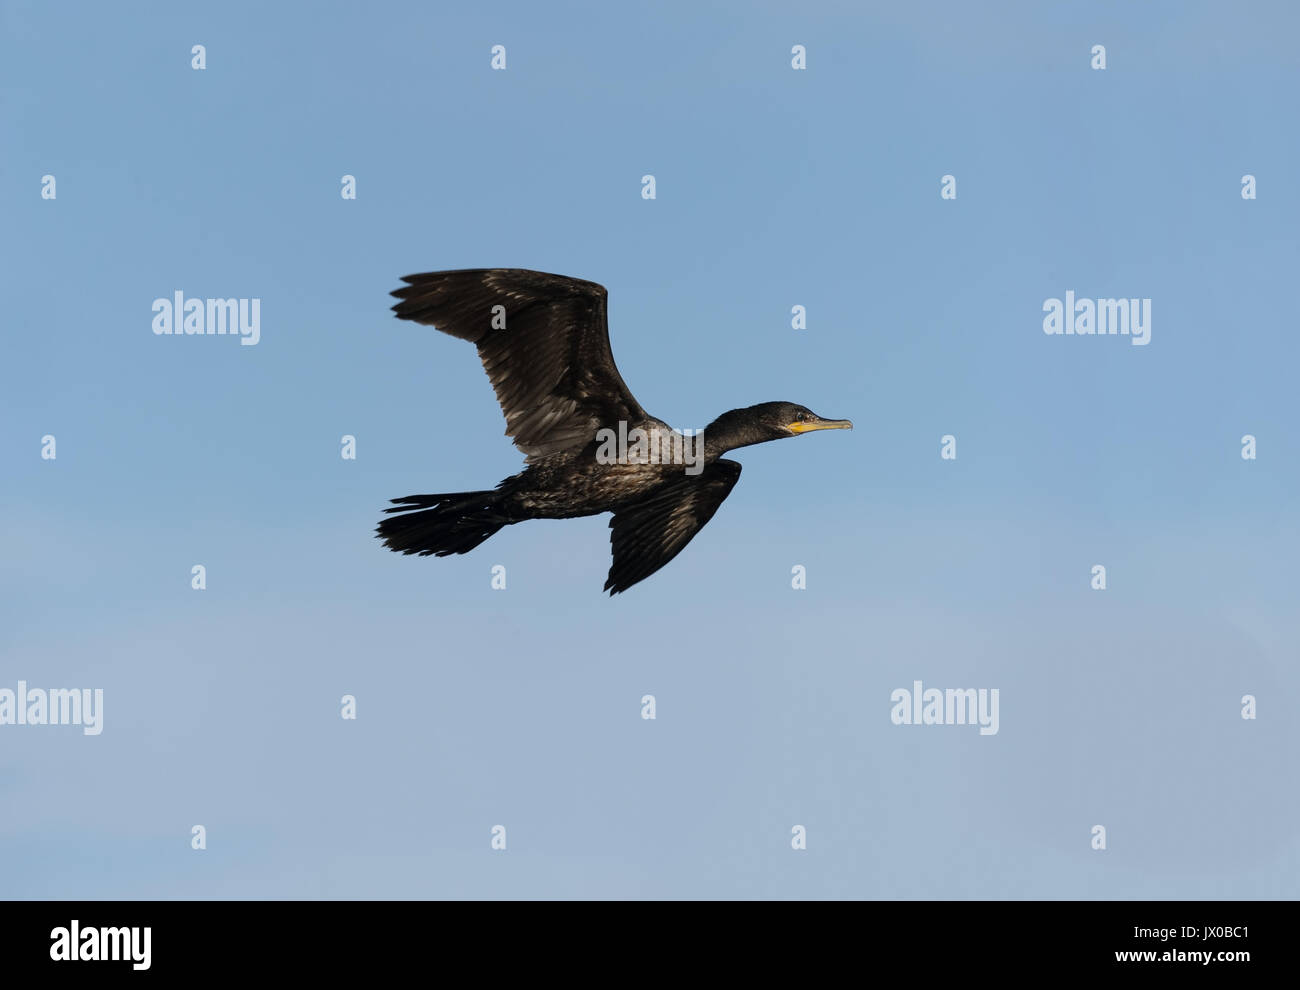 Ente fliegen Schwarz isoliert ist eine schwarze Ente fliegen in den Himmel mit Wasser immer noch an seine Federn. Stockfoto